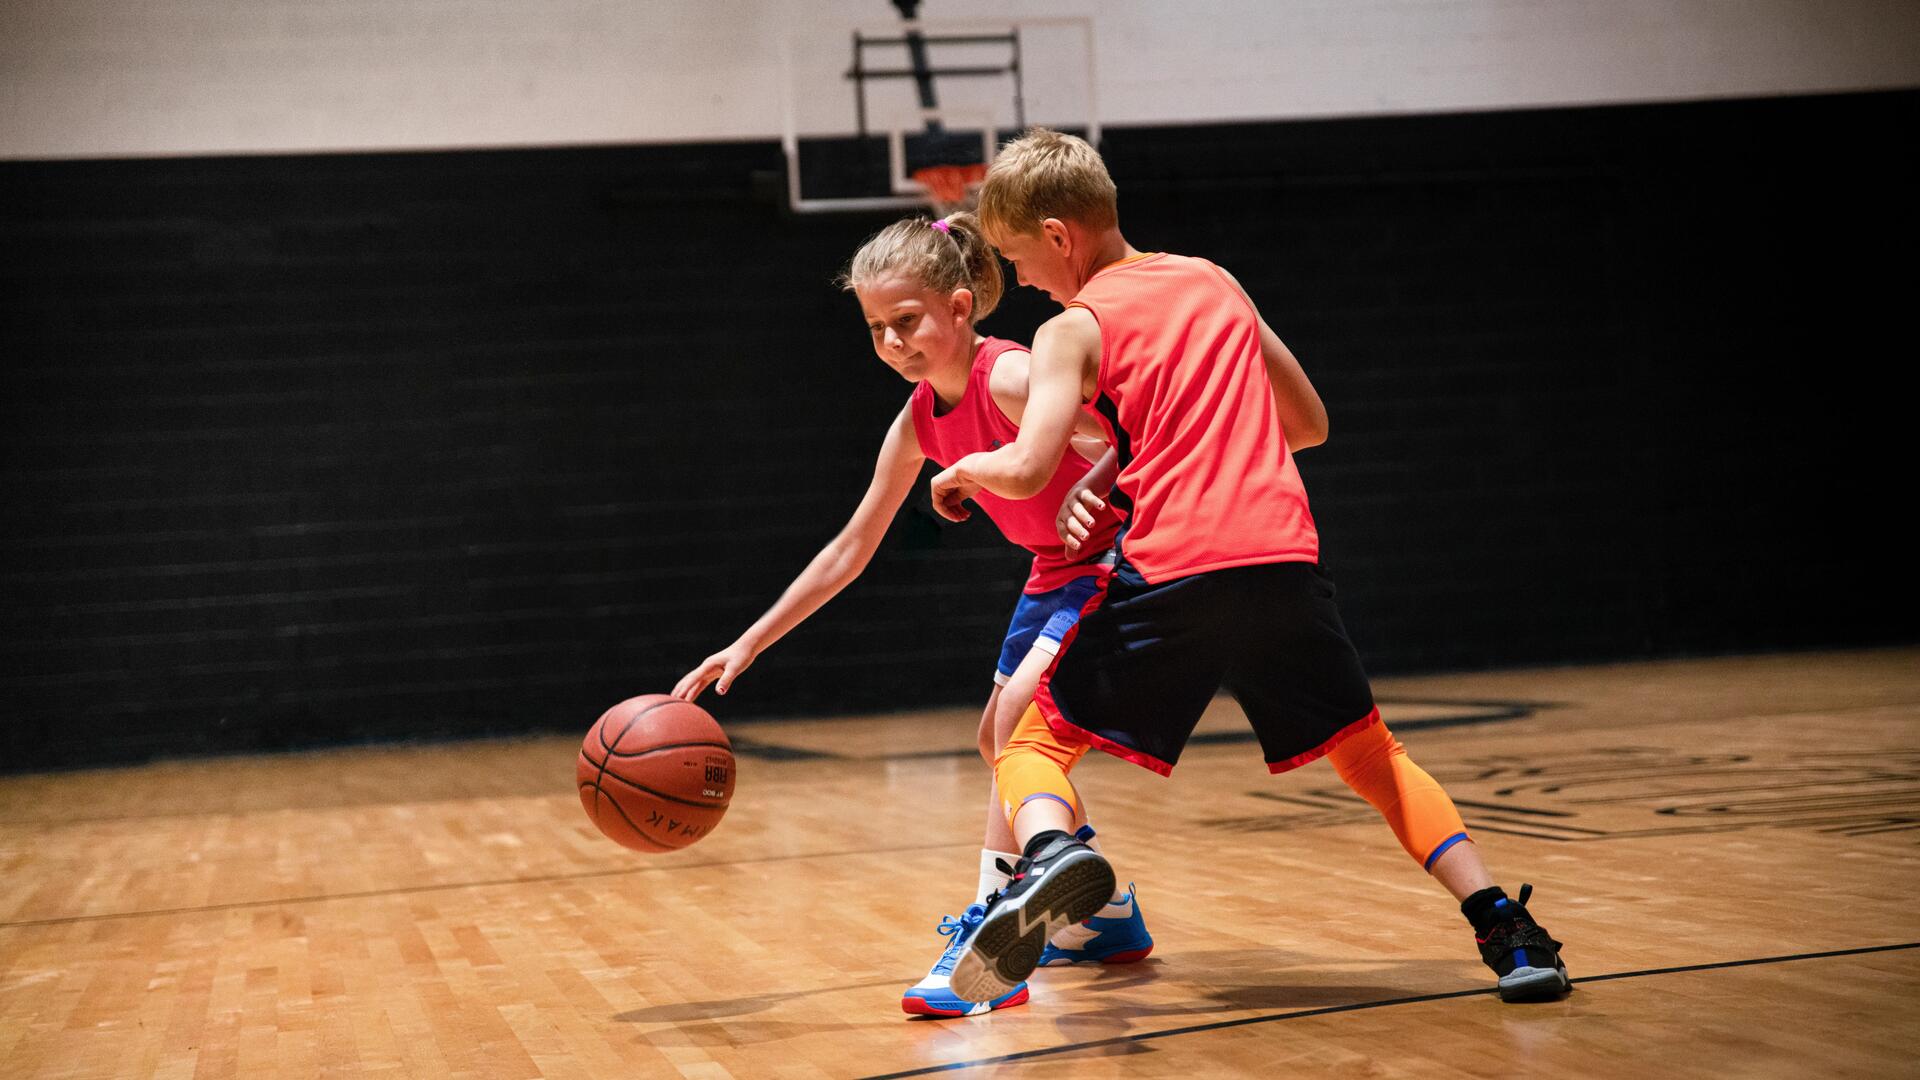 Beneficios del baloncesto en los niños